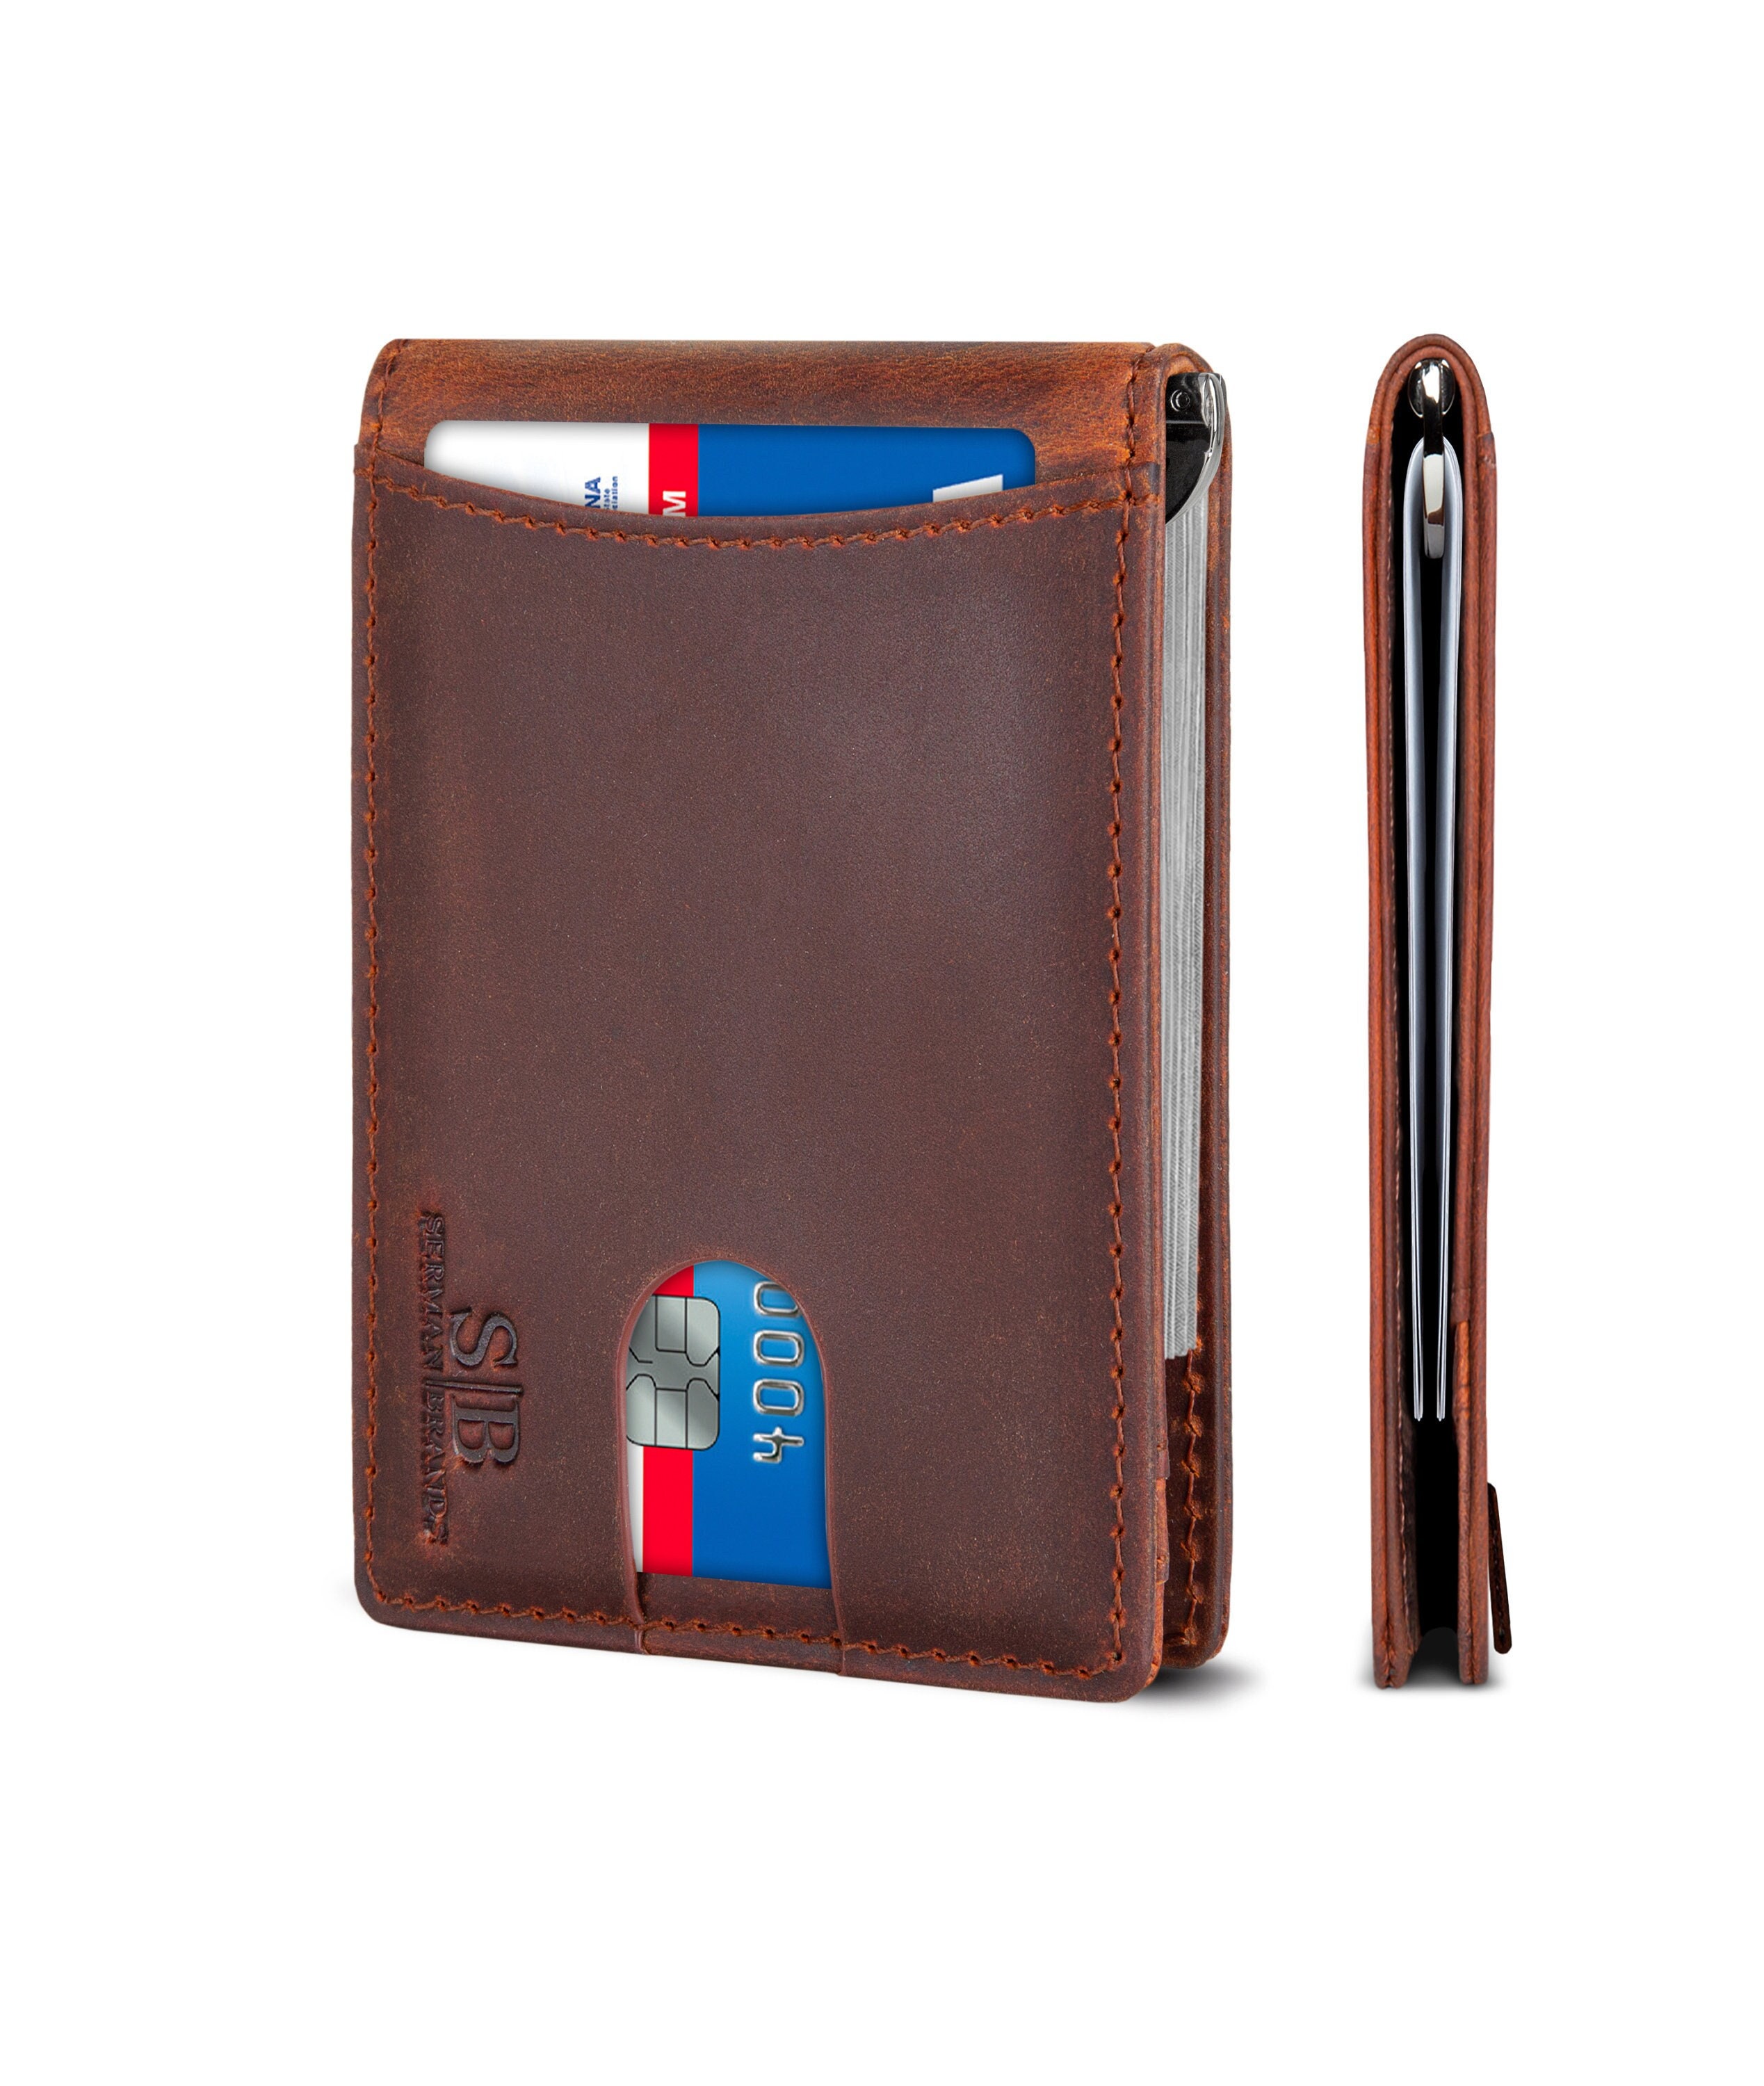 Wallet Slim Wallet Credit Card Holder for Men RFID Fiber Money Clip Wallet Metal Leather Material with Money Pocket Brown Leather 